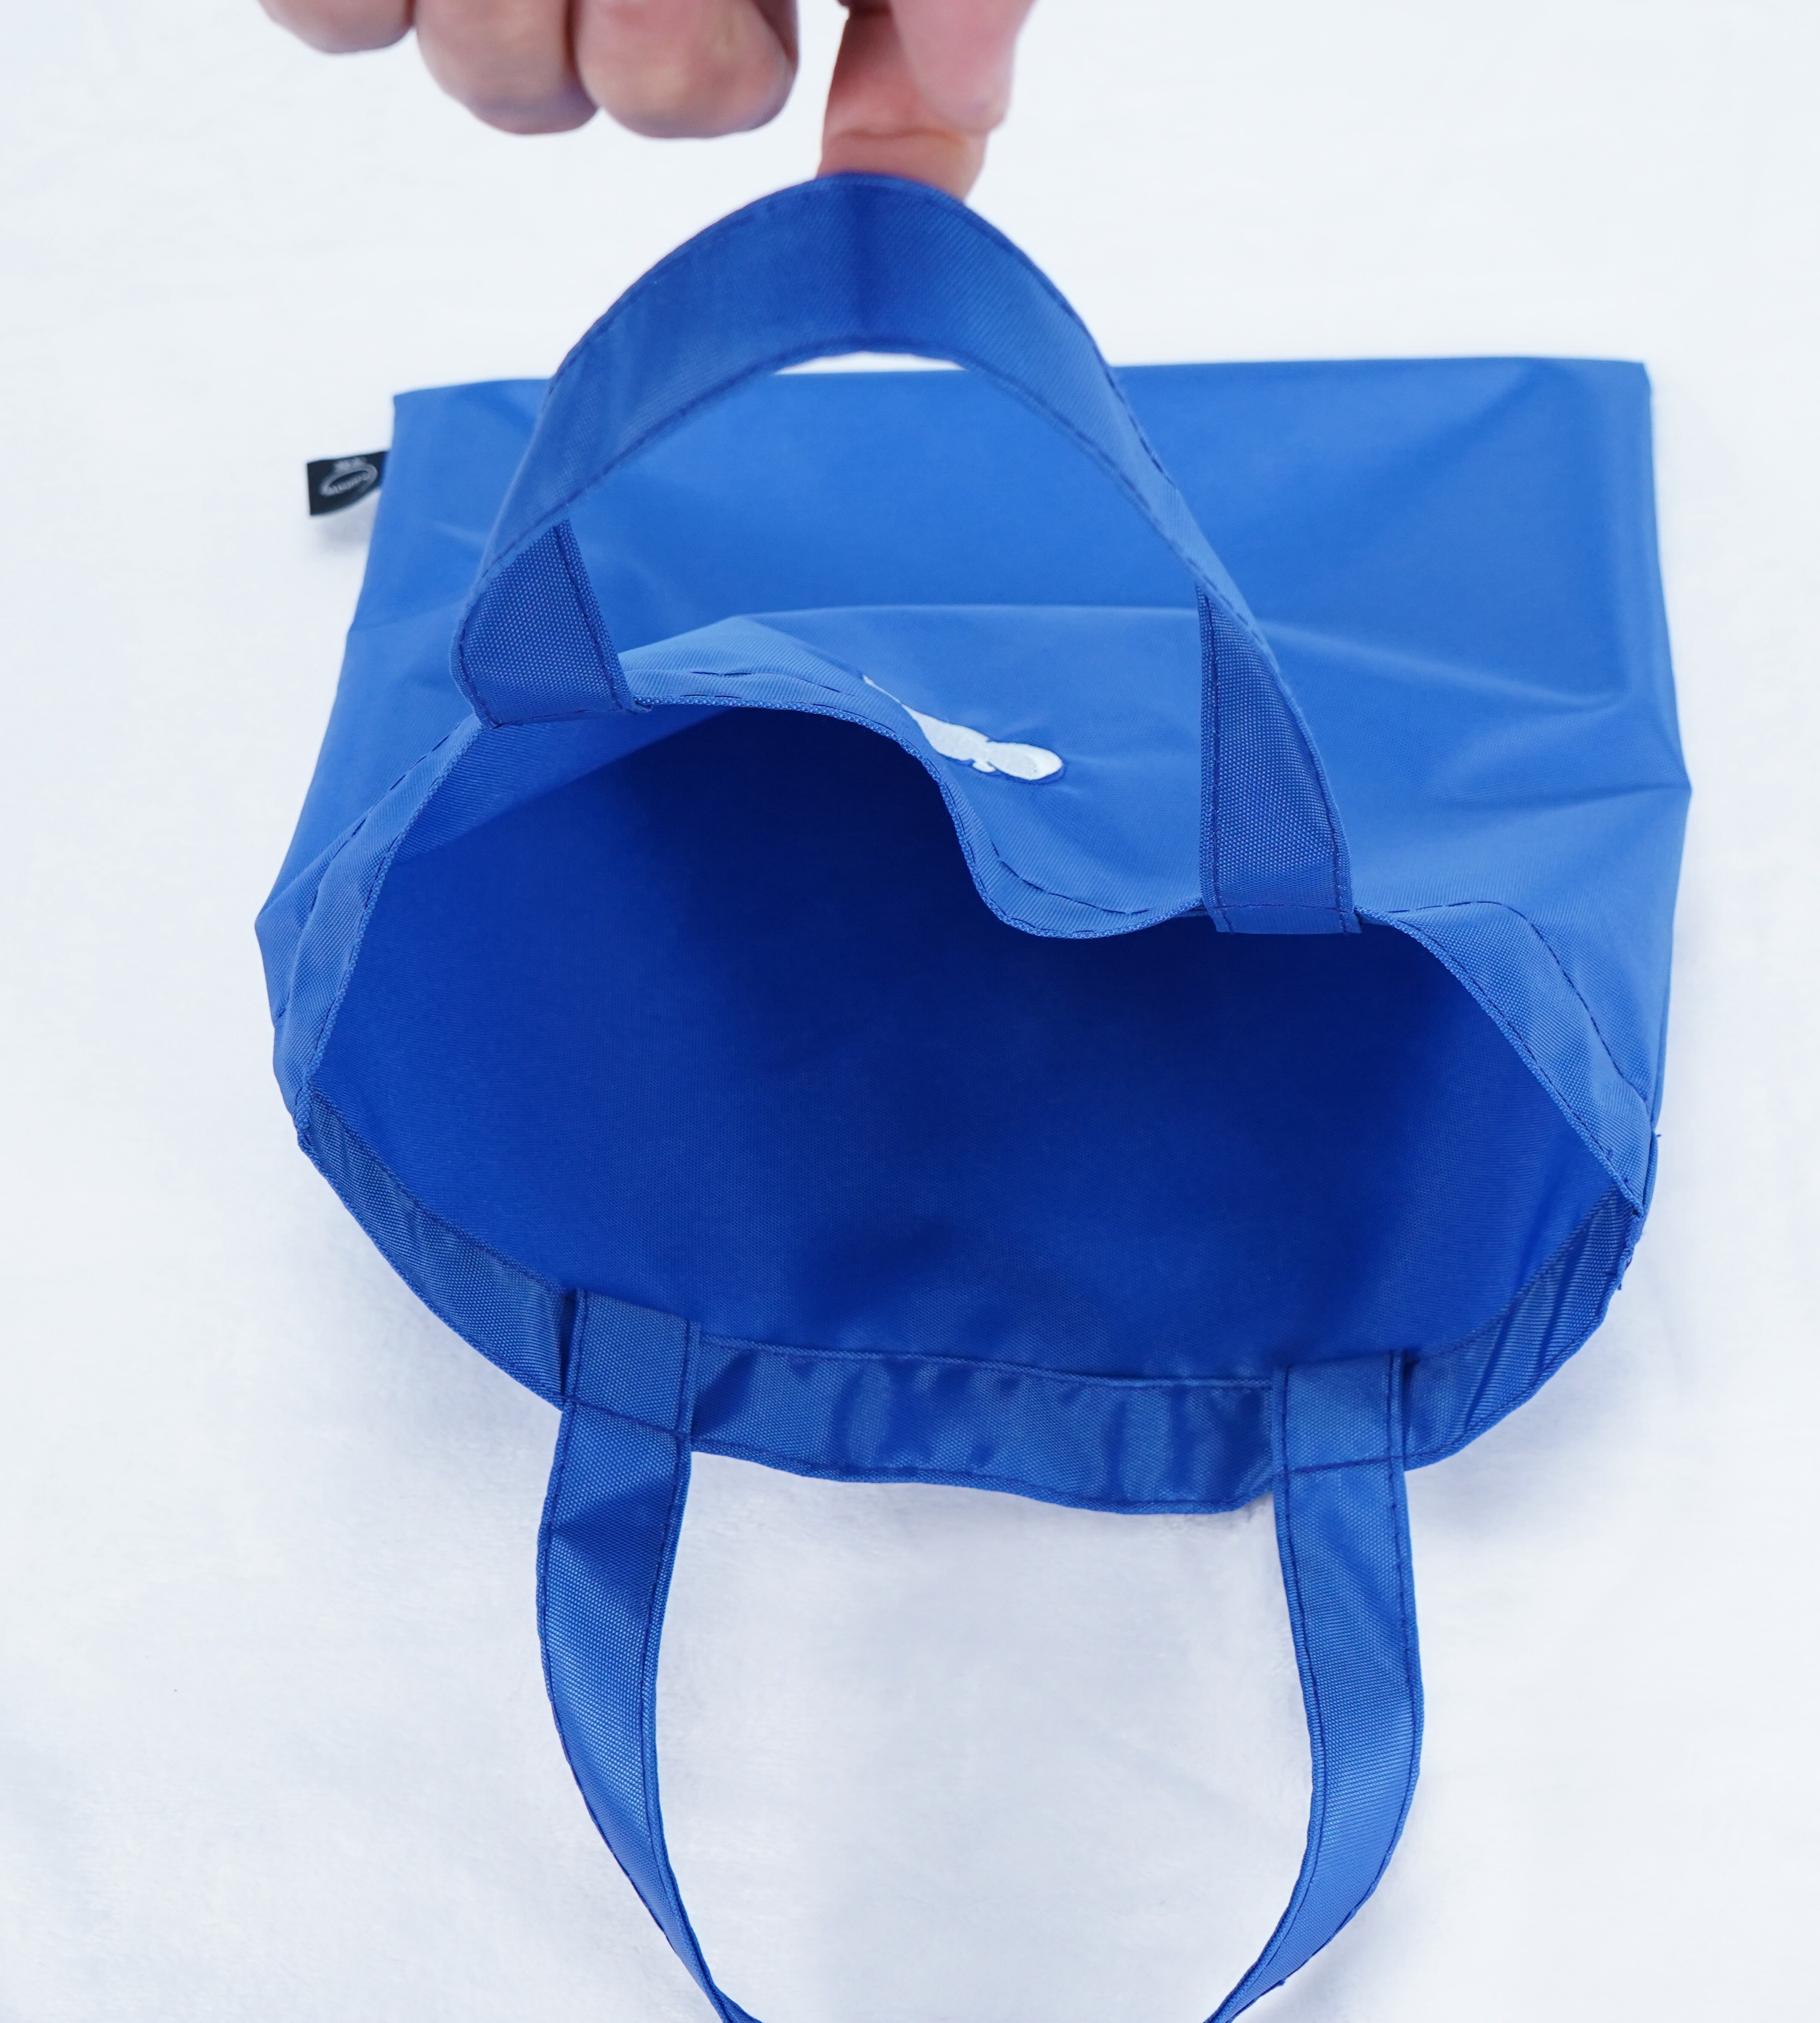 La mode rencontre la fonction : adoptez la polyvalence d’un sac fourre-tout en nylon polyester